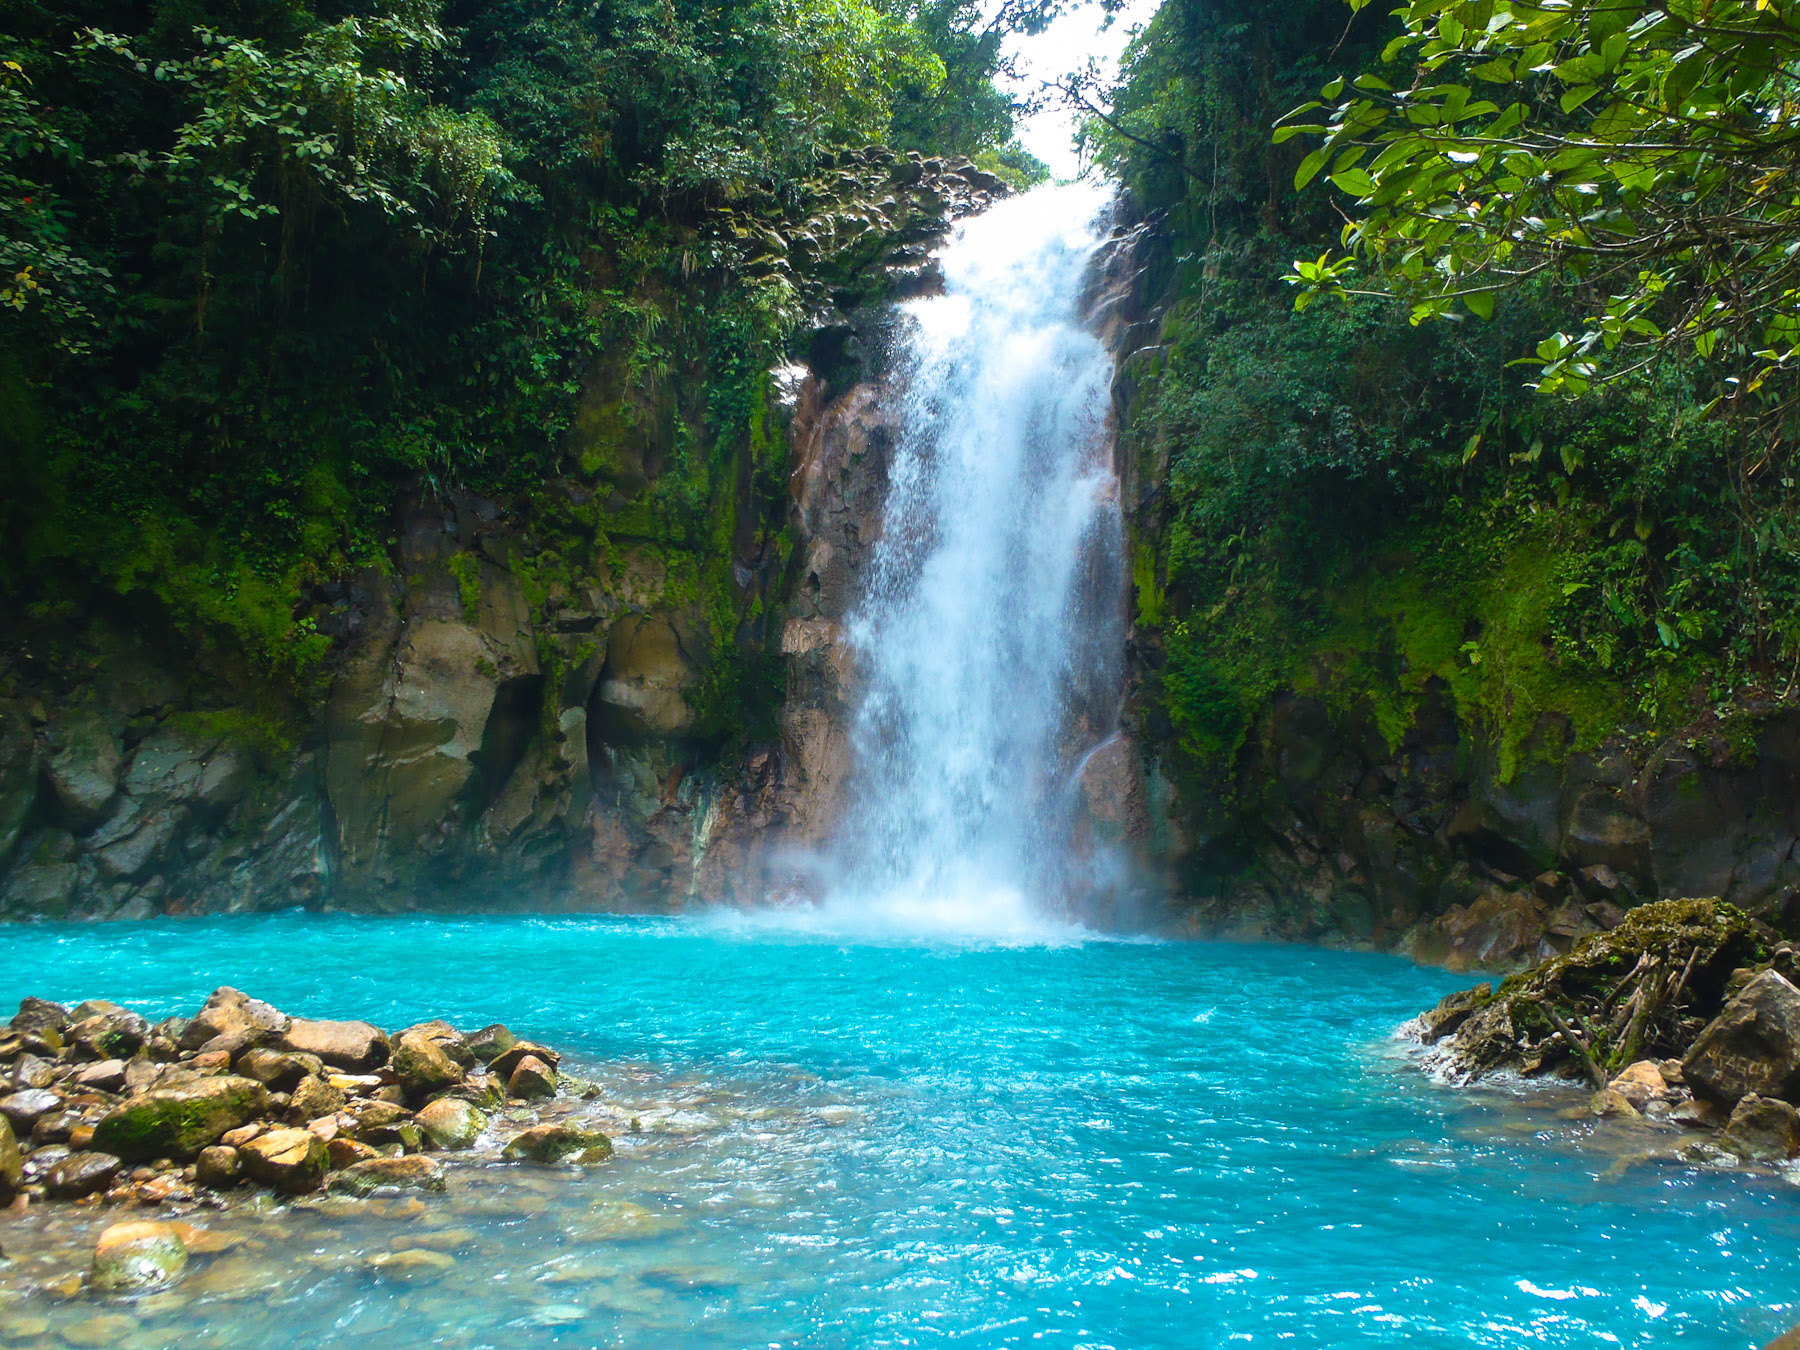 Rio Celeste River Waterfall, Costa Rica - secret swimming hole